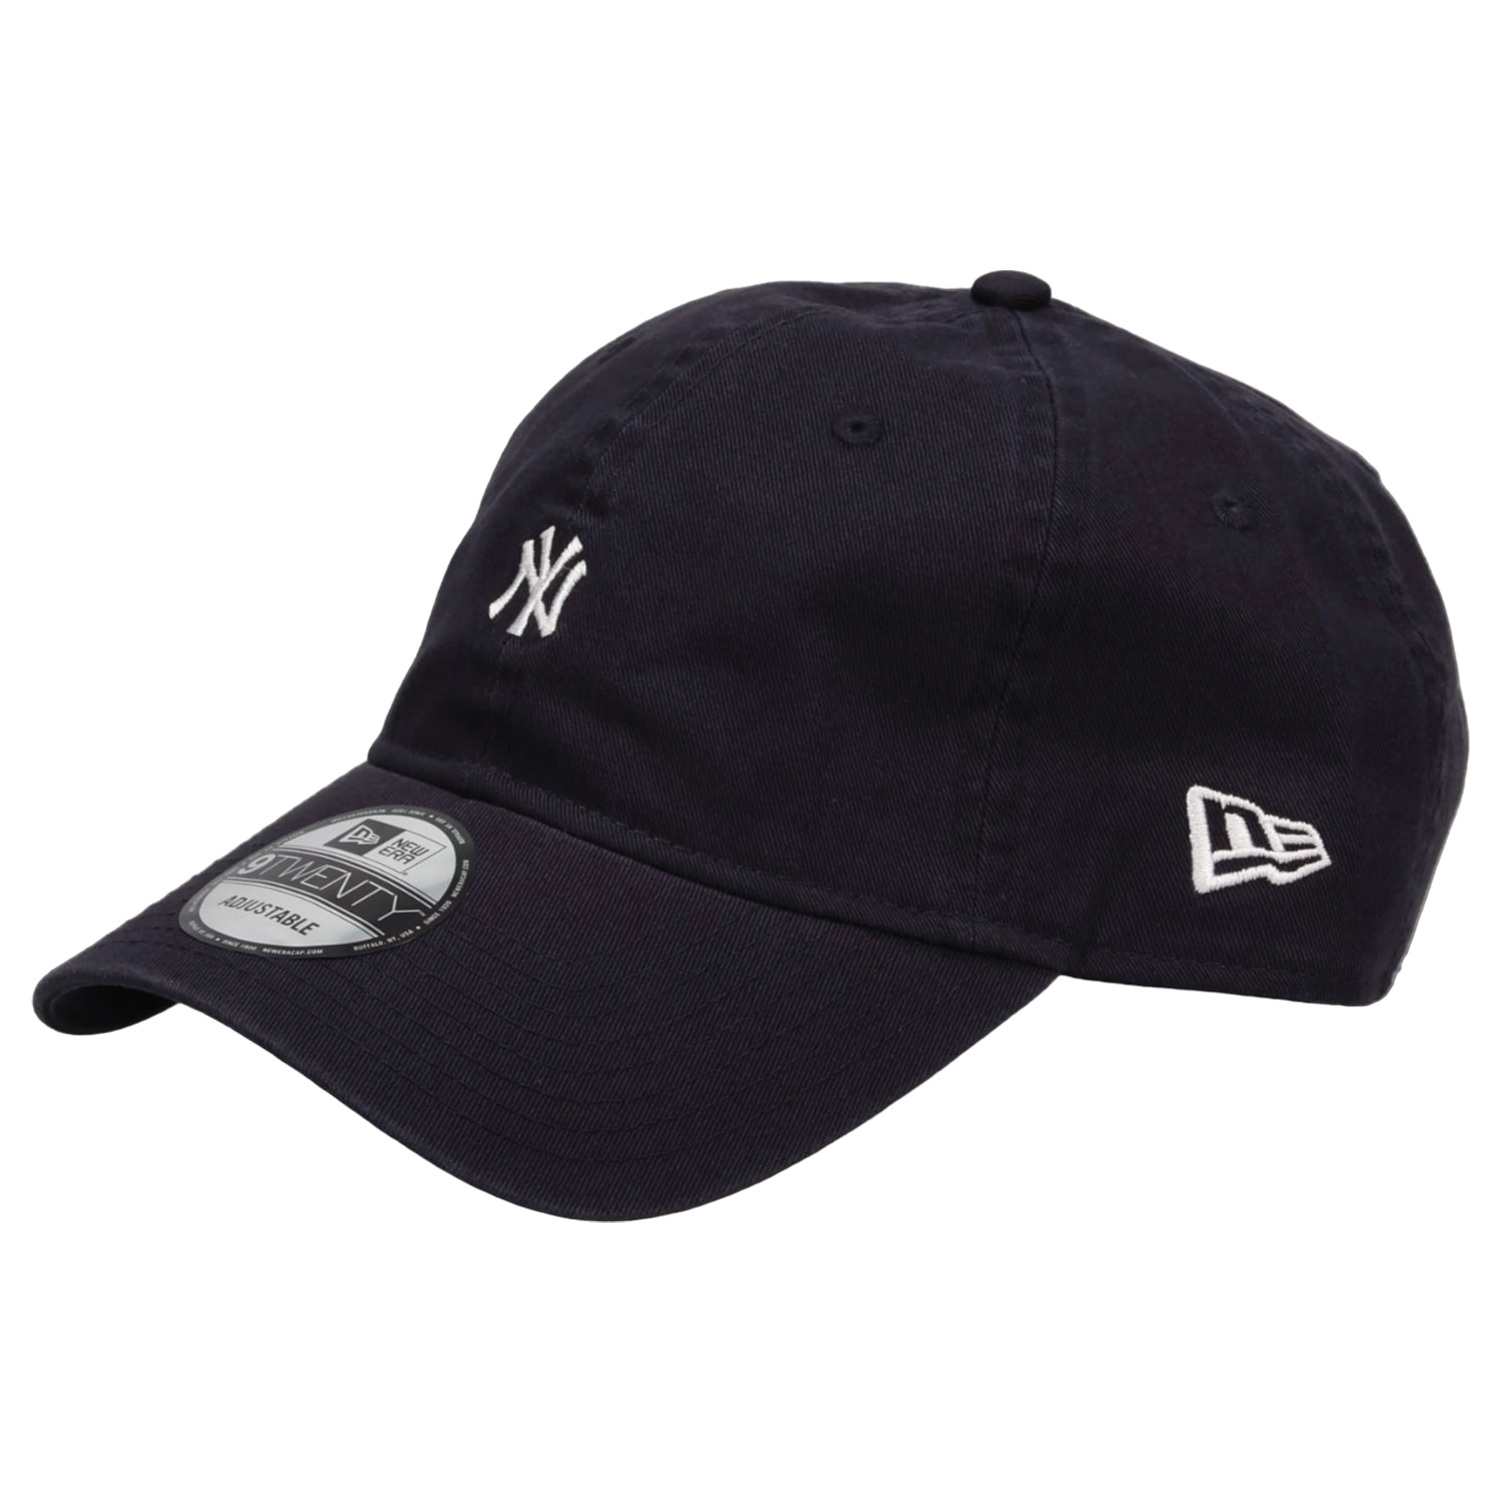 ニューエラ NEW ERA キャップ 帽子 メンズ レディース メジャーリーグ MLB 920 MINI LOGO 1375